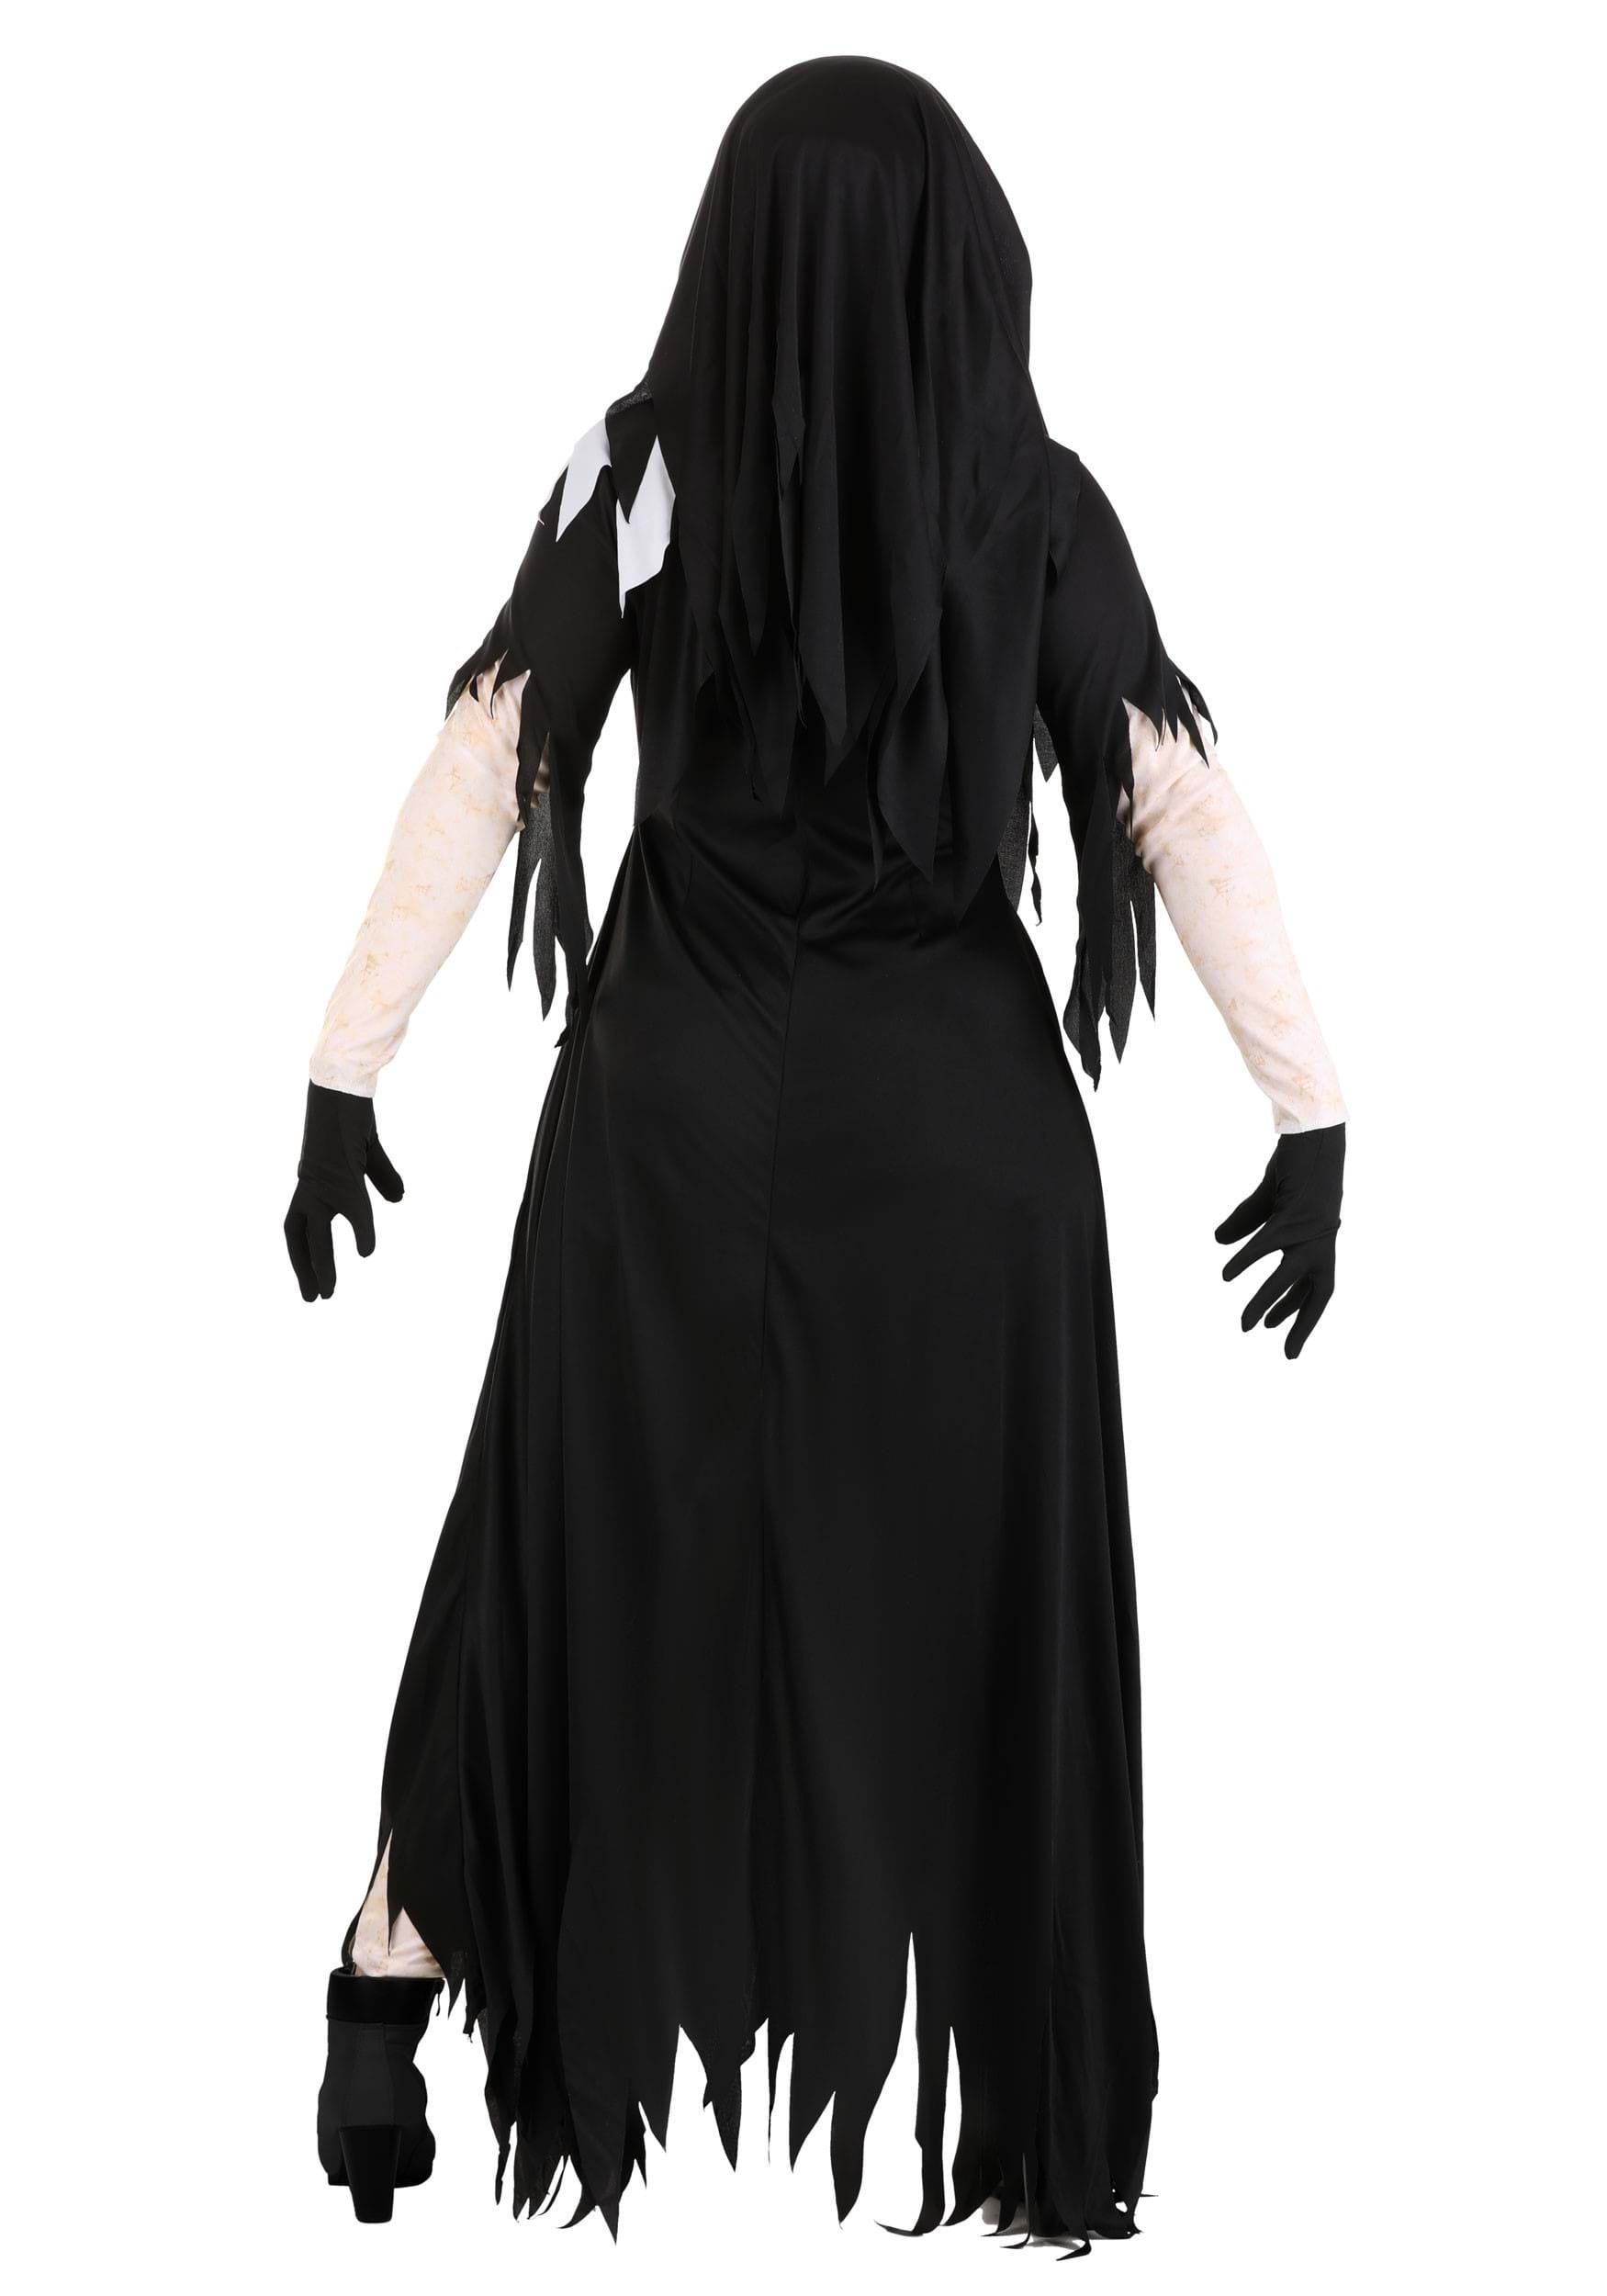 Dreadful Nun Women's Fancy Dress Costume